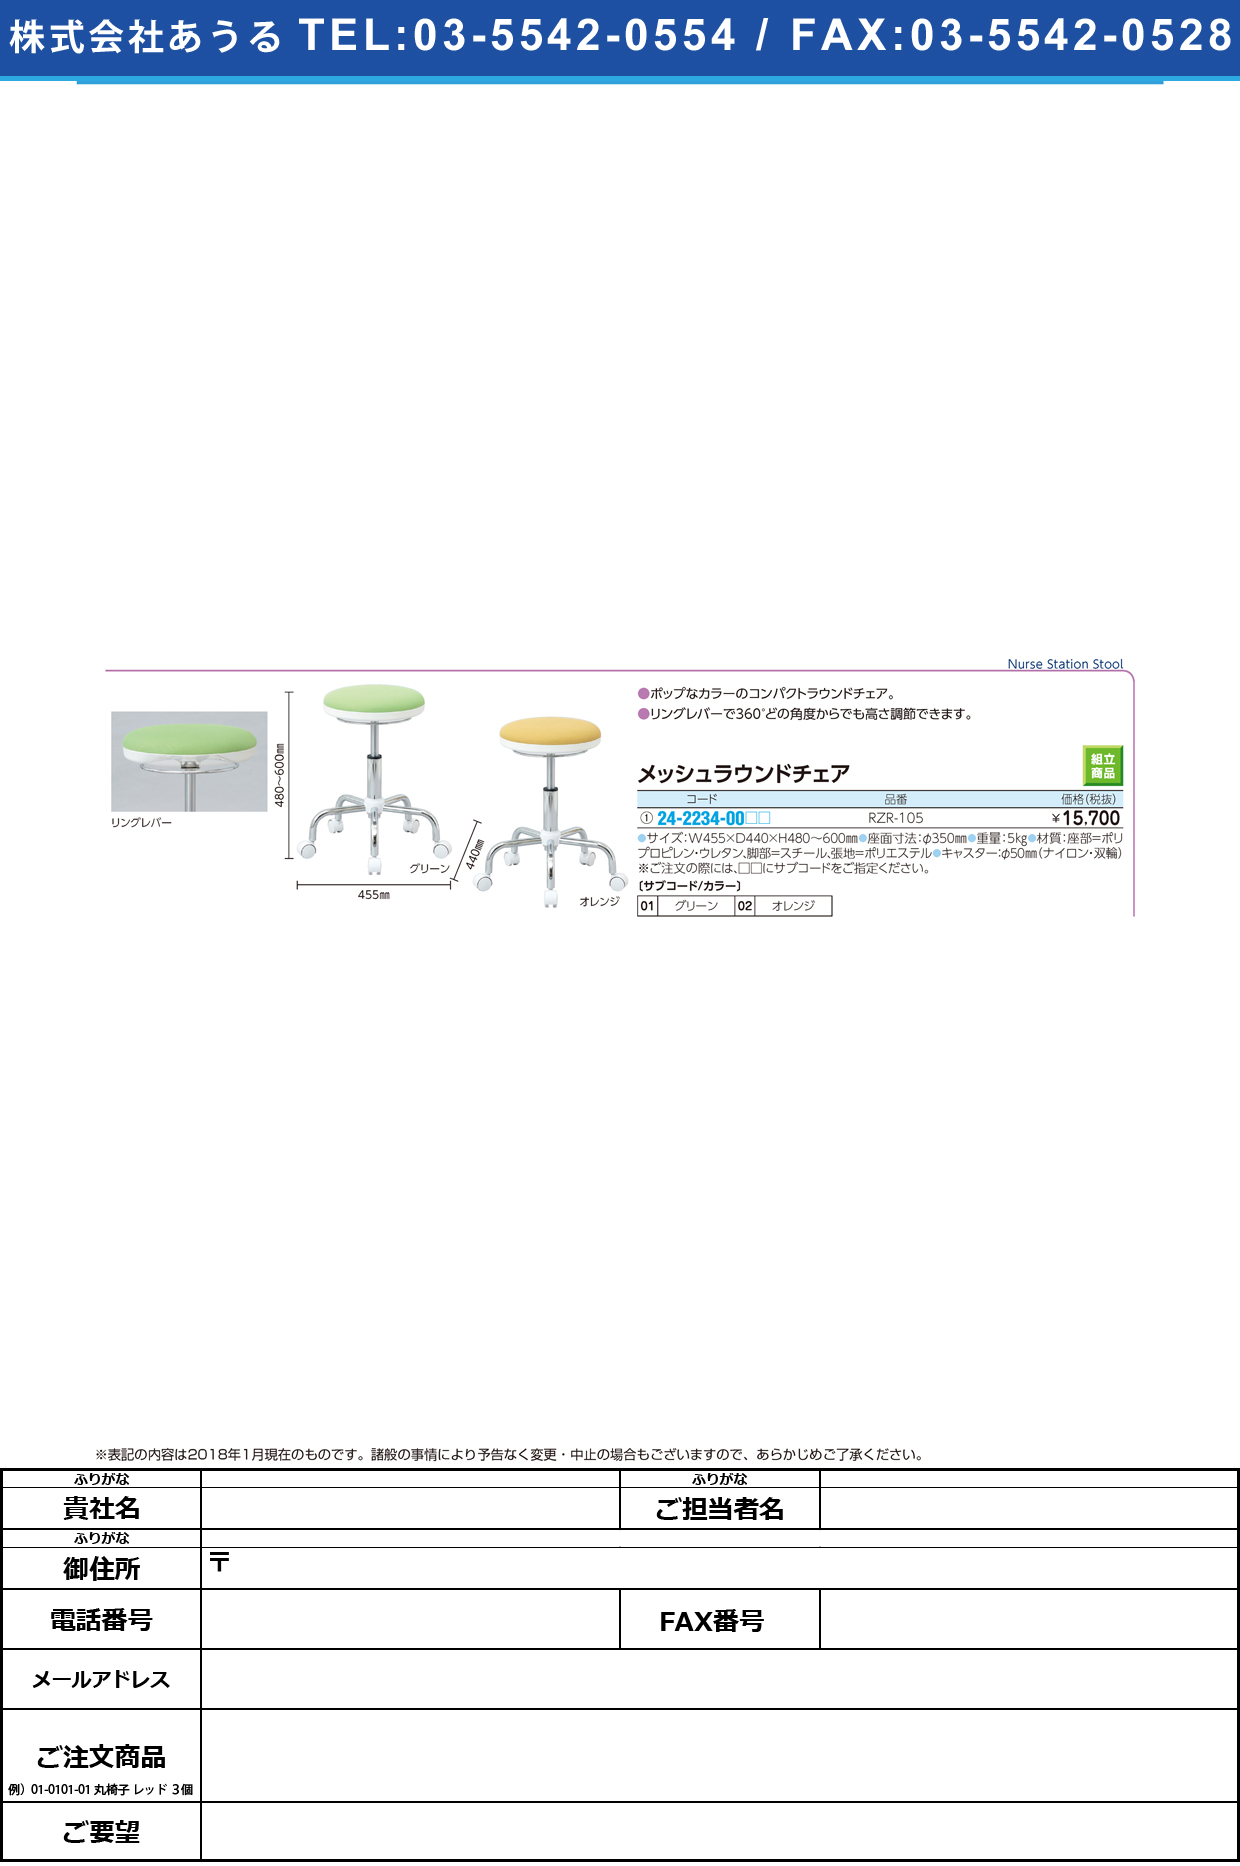 (24-2234-00)メッシュラウンドチェア RZR-105 ﾒｯｼｭﾗｳﾝﾄﾞﾁｪｱ グリーン(ナカバヤシ)【1台単位】【2019年カタログ商品】